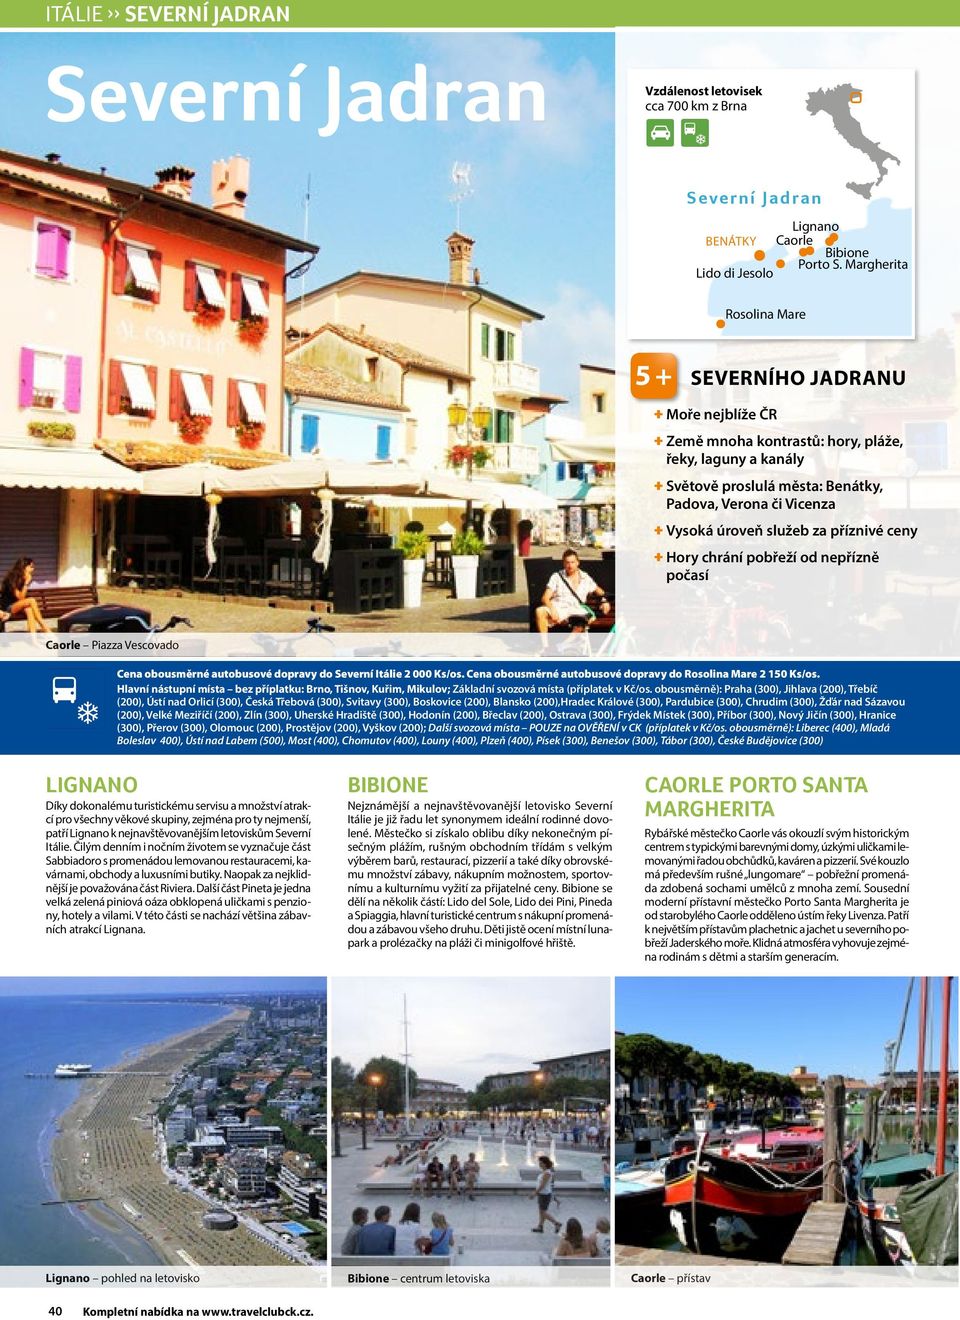 Vysoká úroveň služeb za příznivé ceny + Hory chrání pobřeží od nepřízně počasí Caorle Piazza Vescovado Cena obousměrné autobusové dopravy do Severní Itálie 2 000 Ks/os.